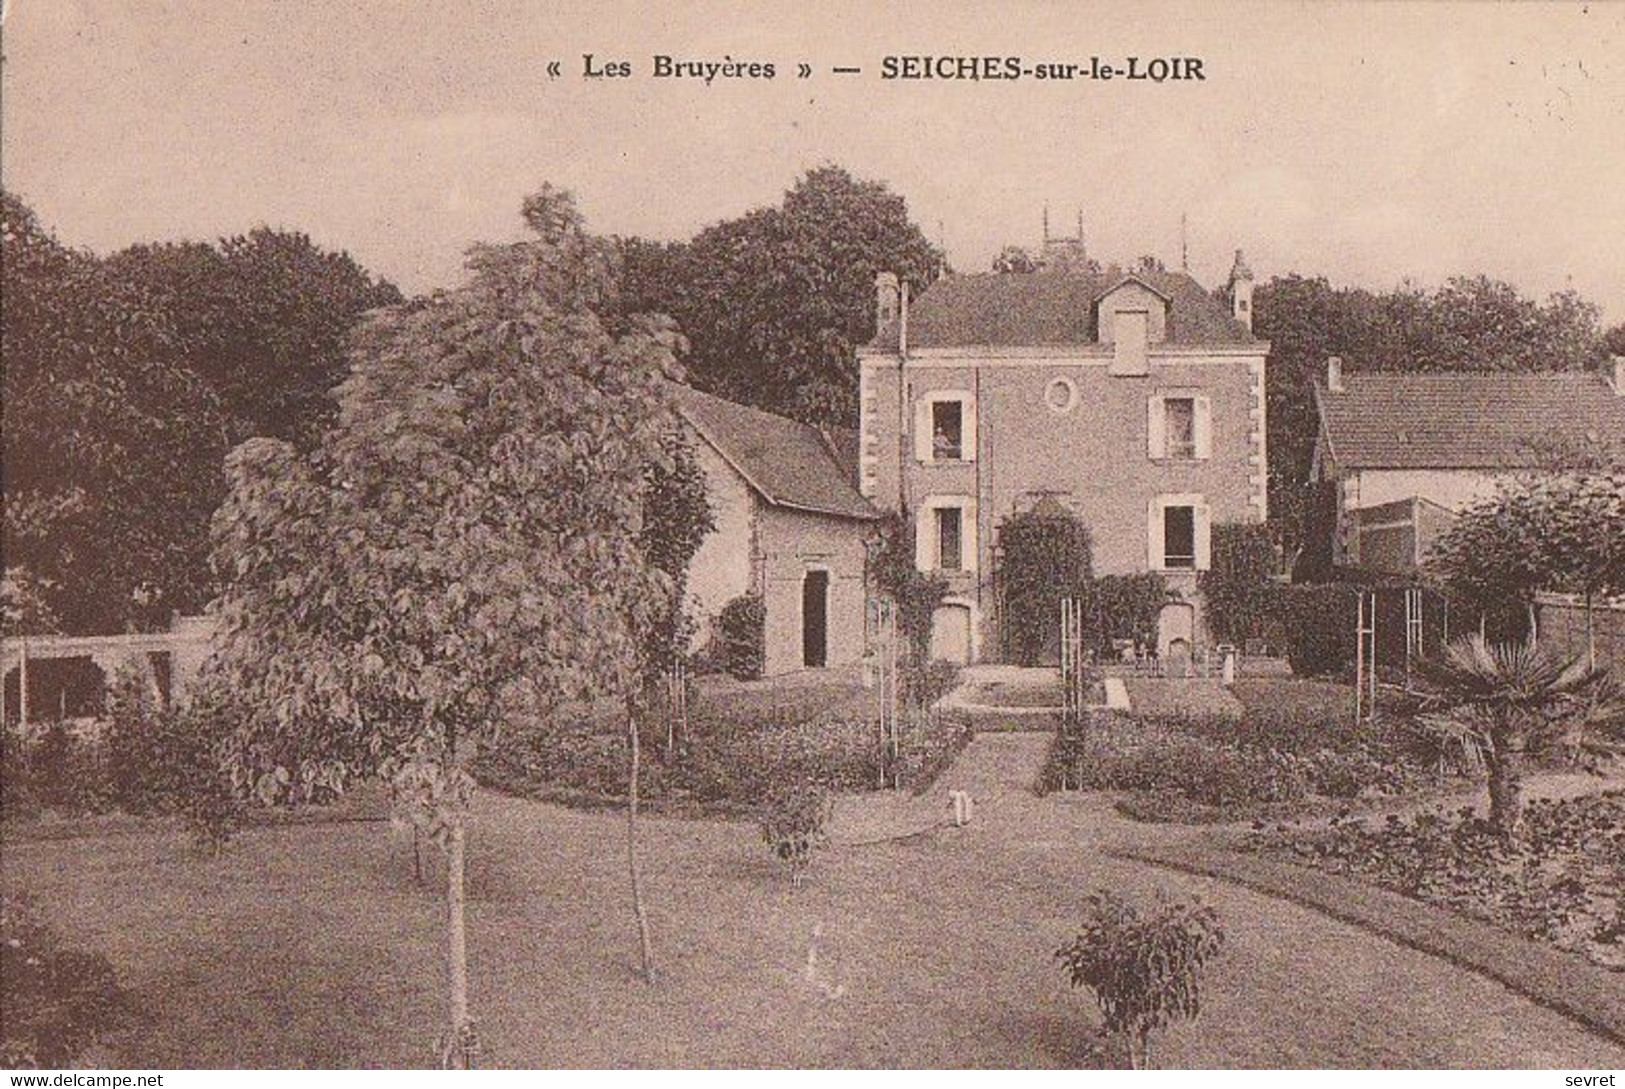 SEICHES-sur-le-LOIR. - "Les Bruyères" - Seiches Sur Le Loir